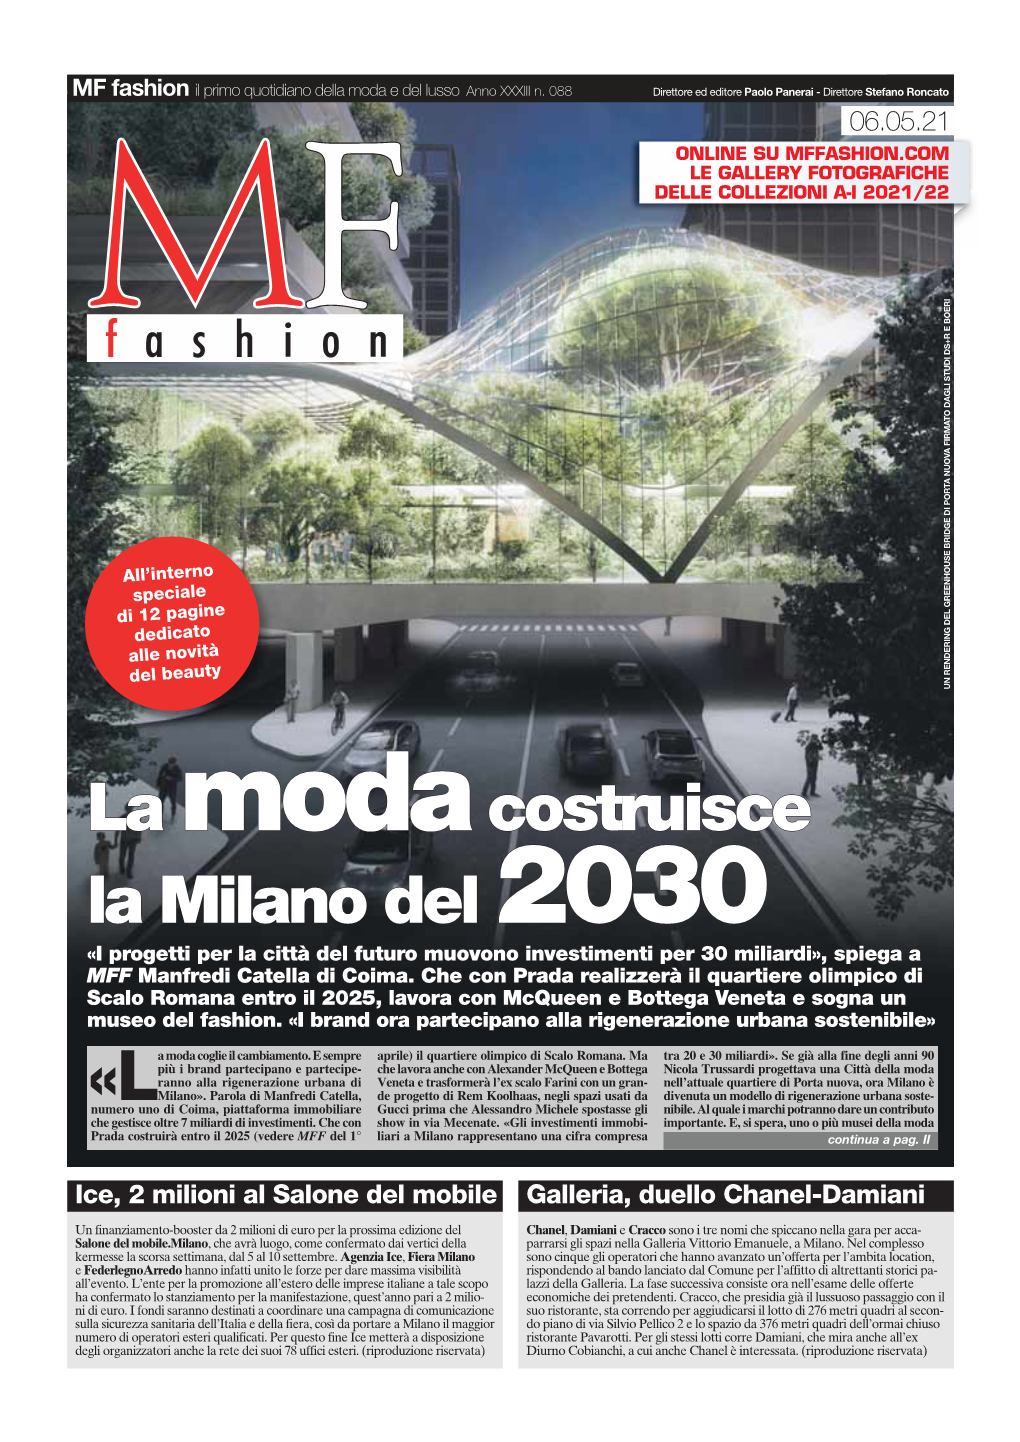 La Modacostruisce La Milano Del 2030